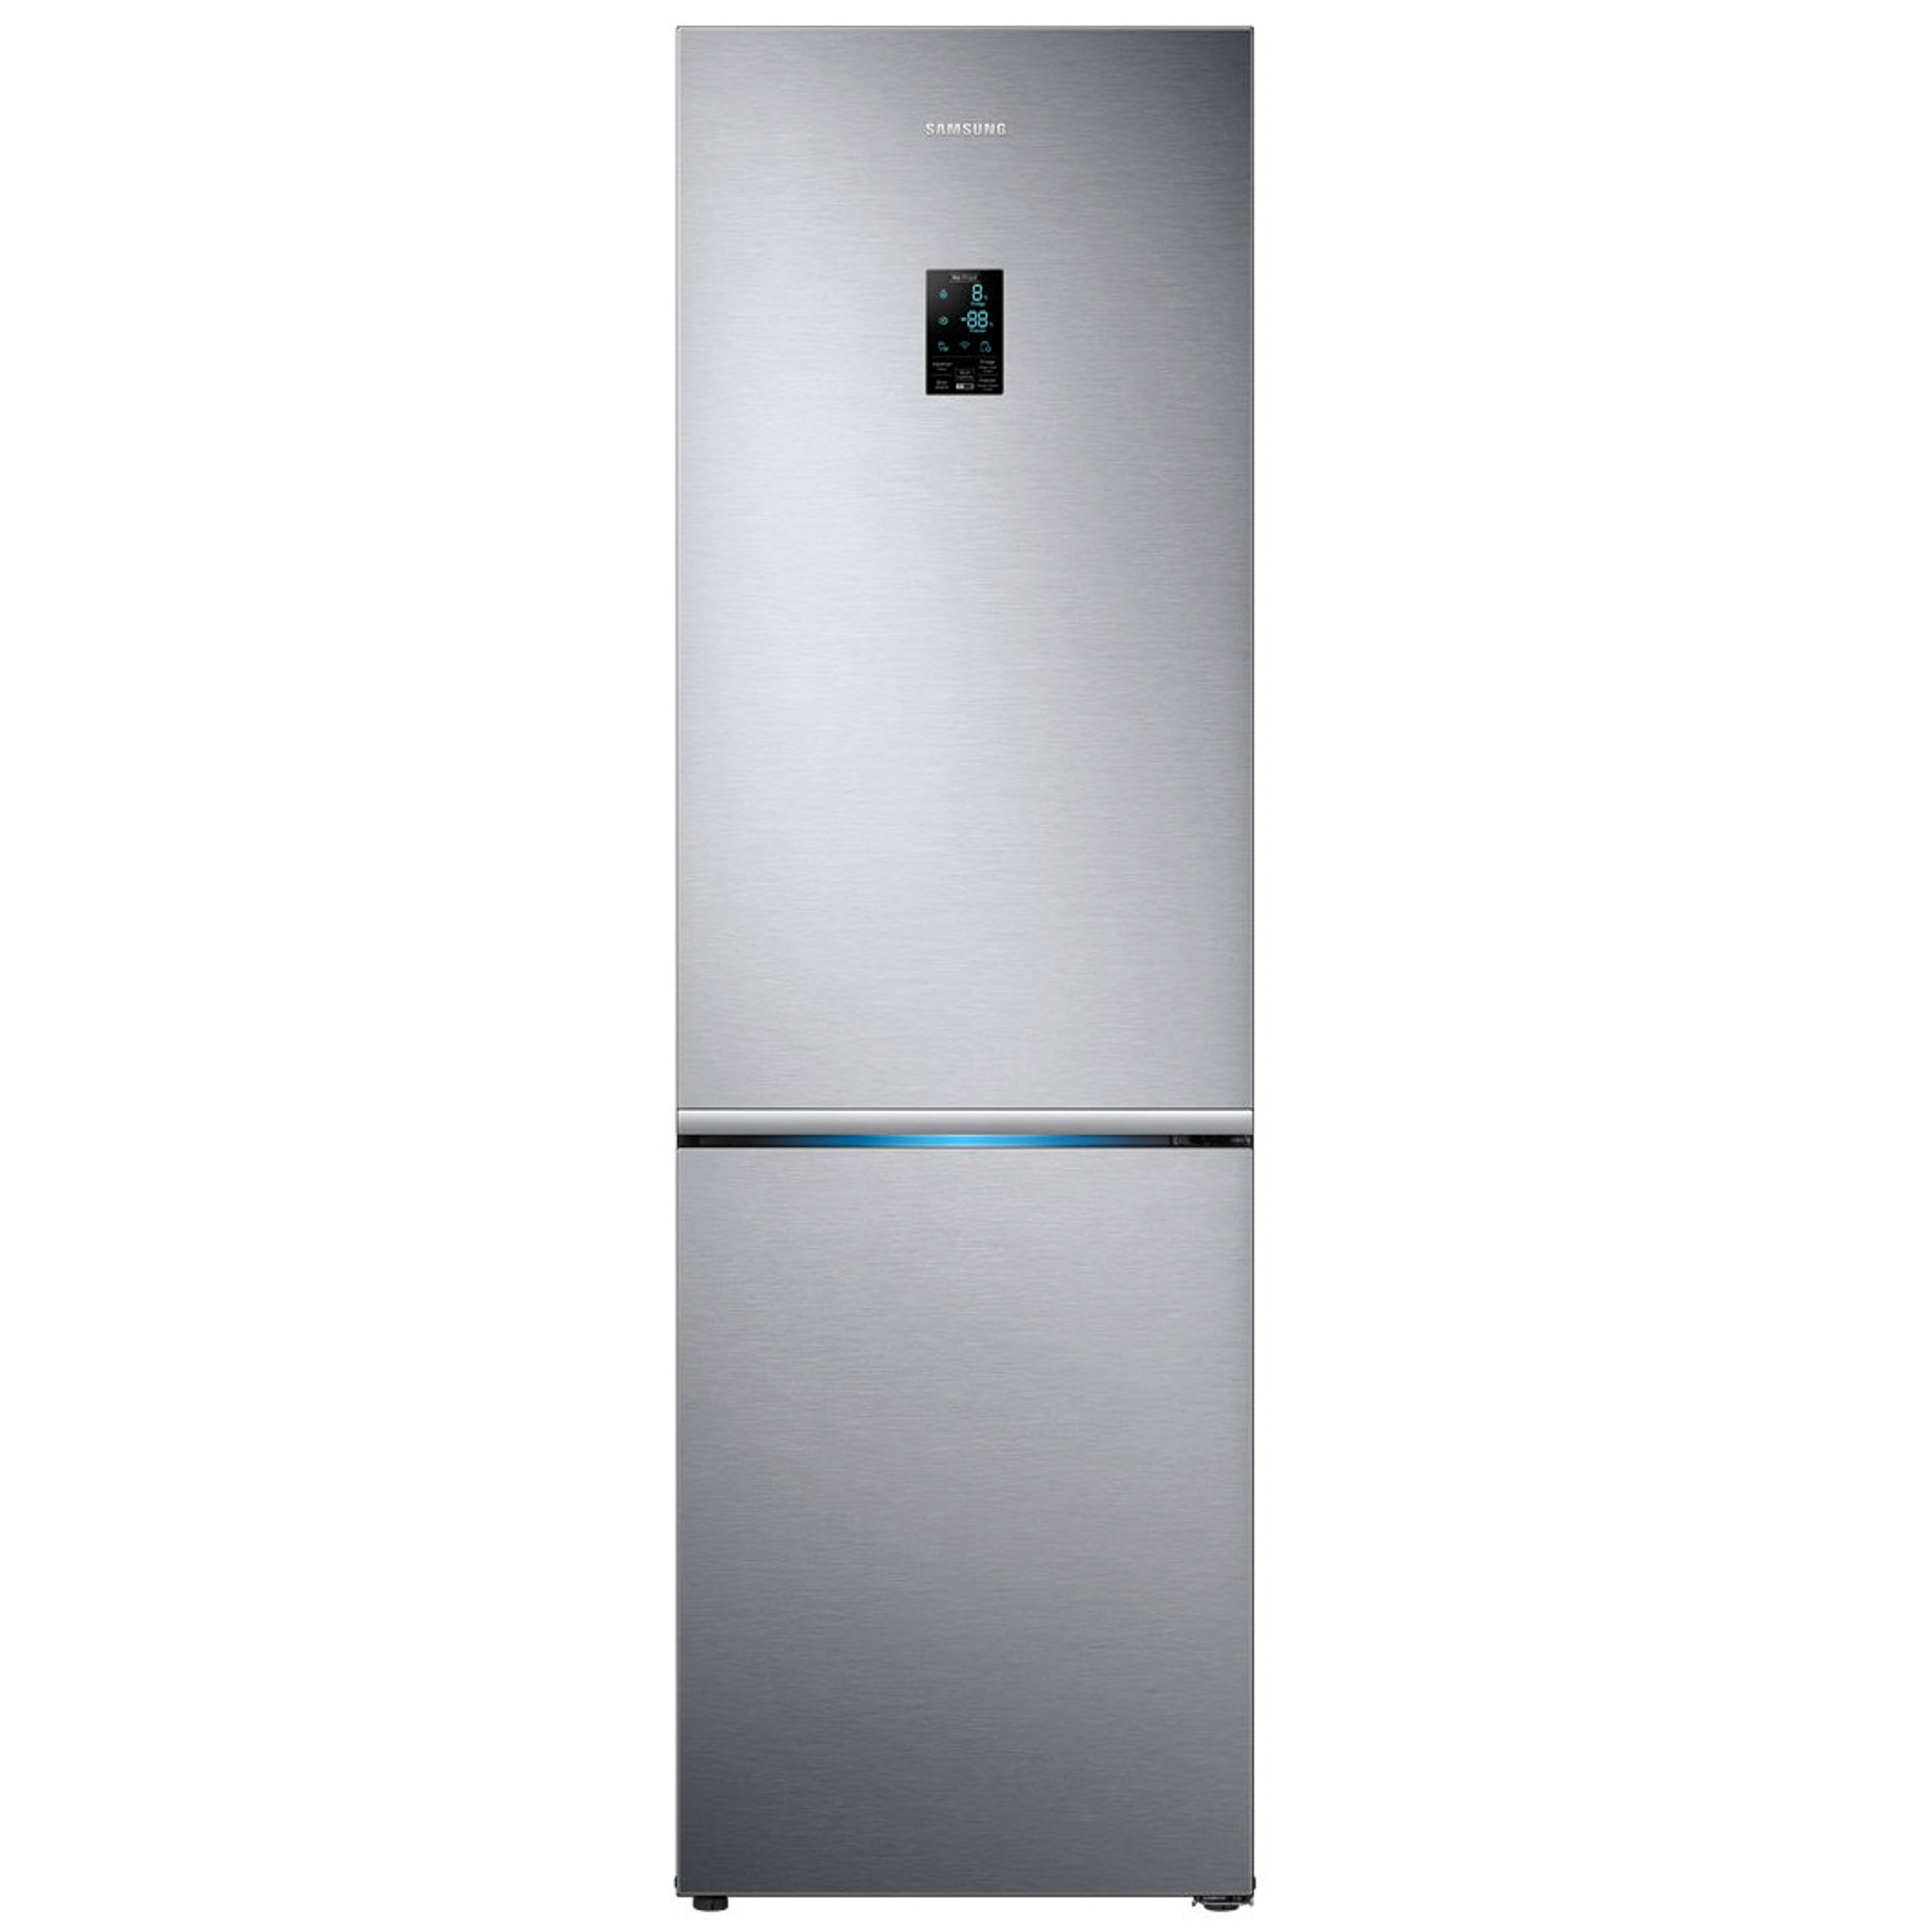 Холодильник Samsung RB34K6220S4 Silver, цвет серебристый RB34K6220S4/WT - фото 1